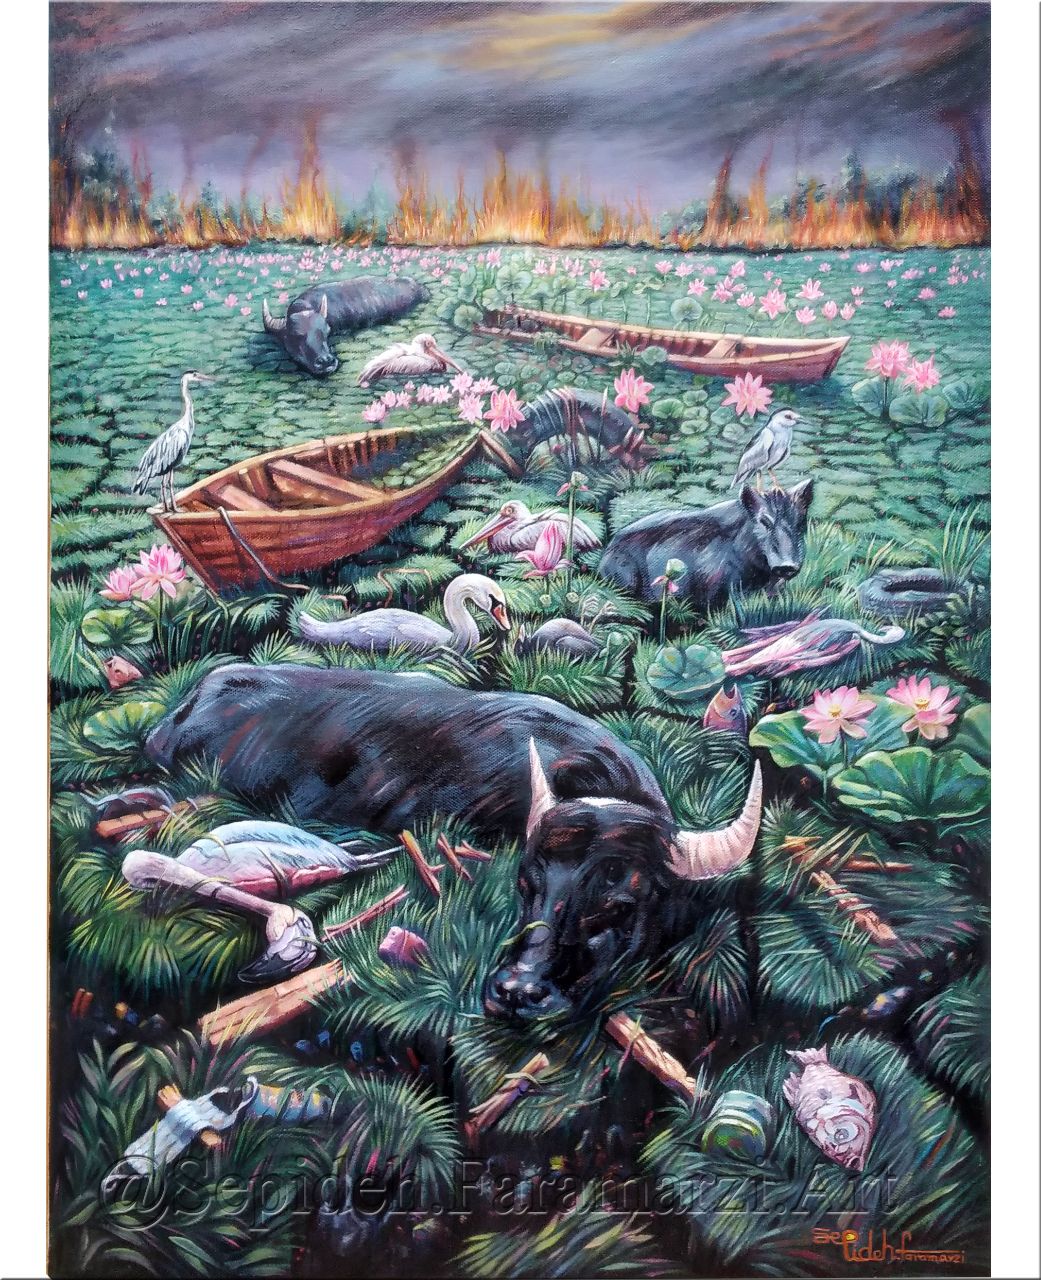 کویر سبز نقاشی   رنگ روغن در باب خشک شدن تدریجی تالاب بندرانزلی اثر”سپیده فرامرزی “